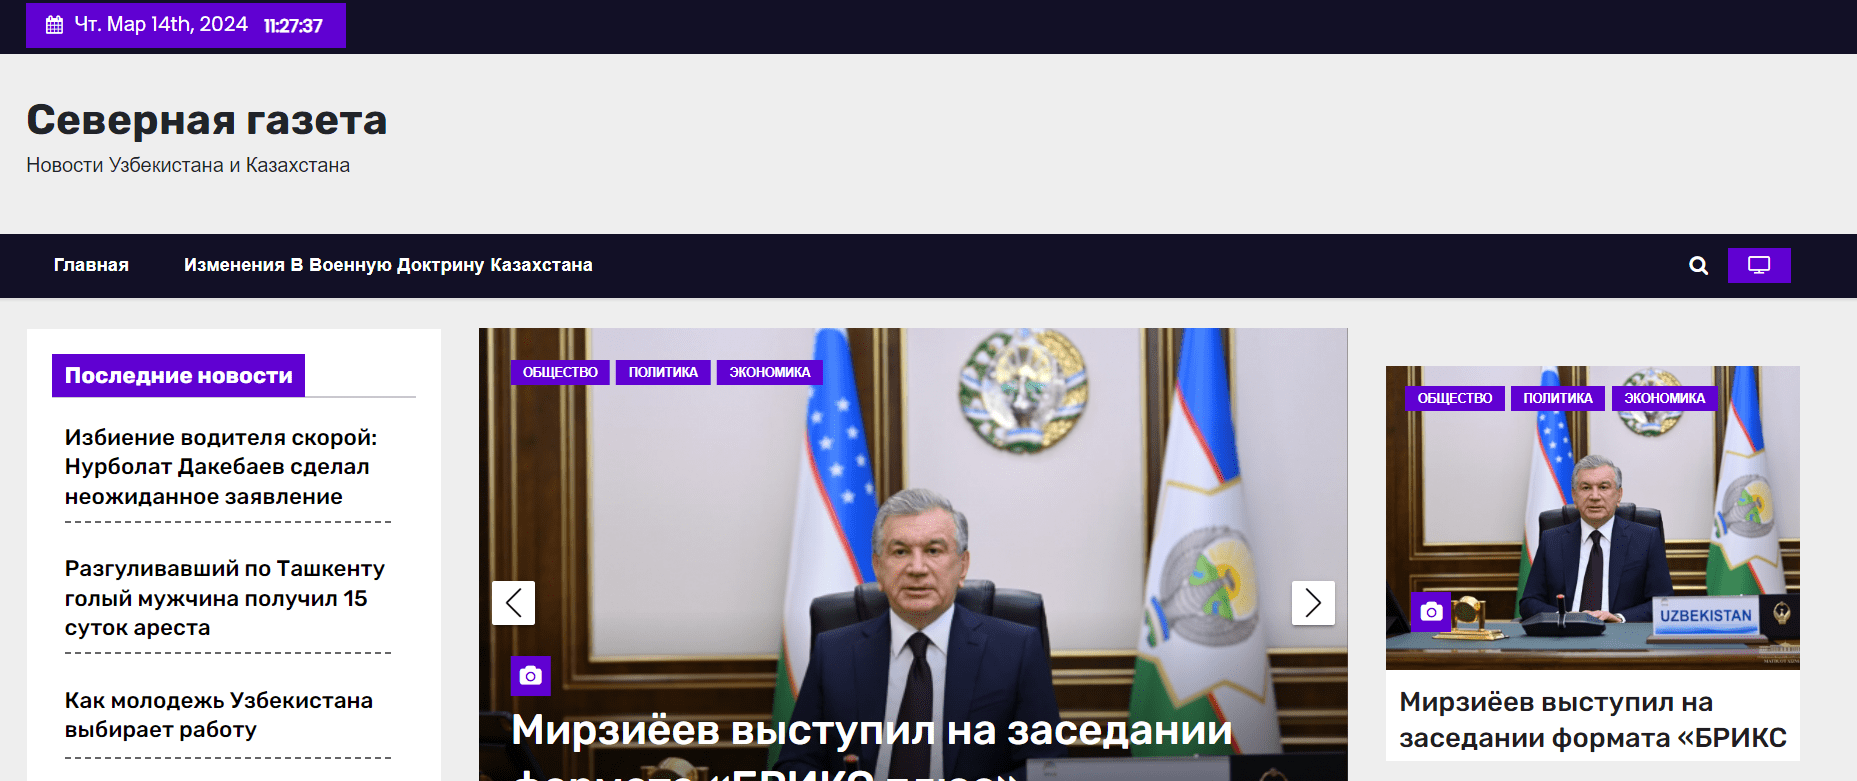 Северная газета (northern-newspaper.ru) - официальный сайт